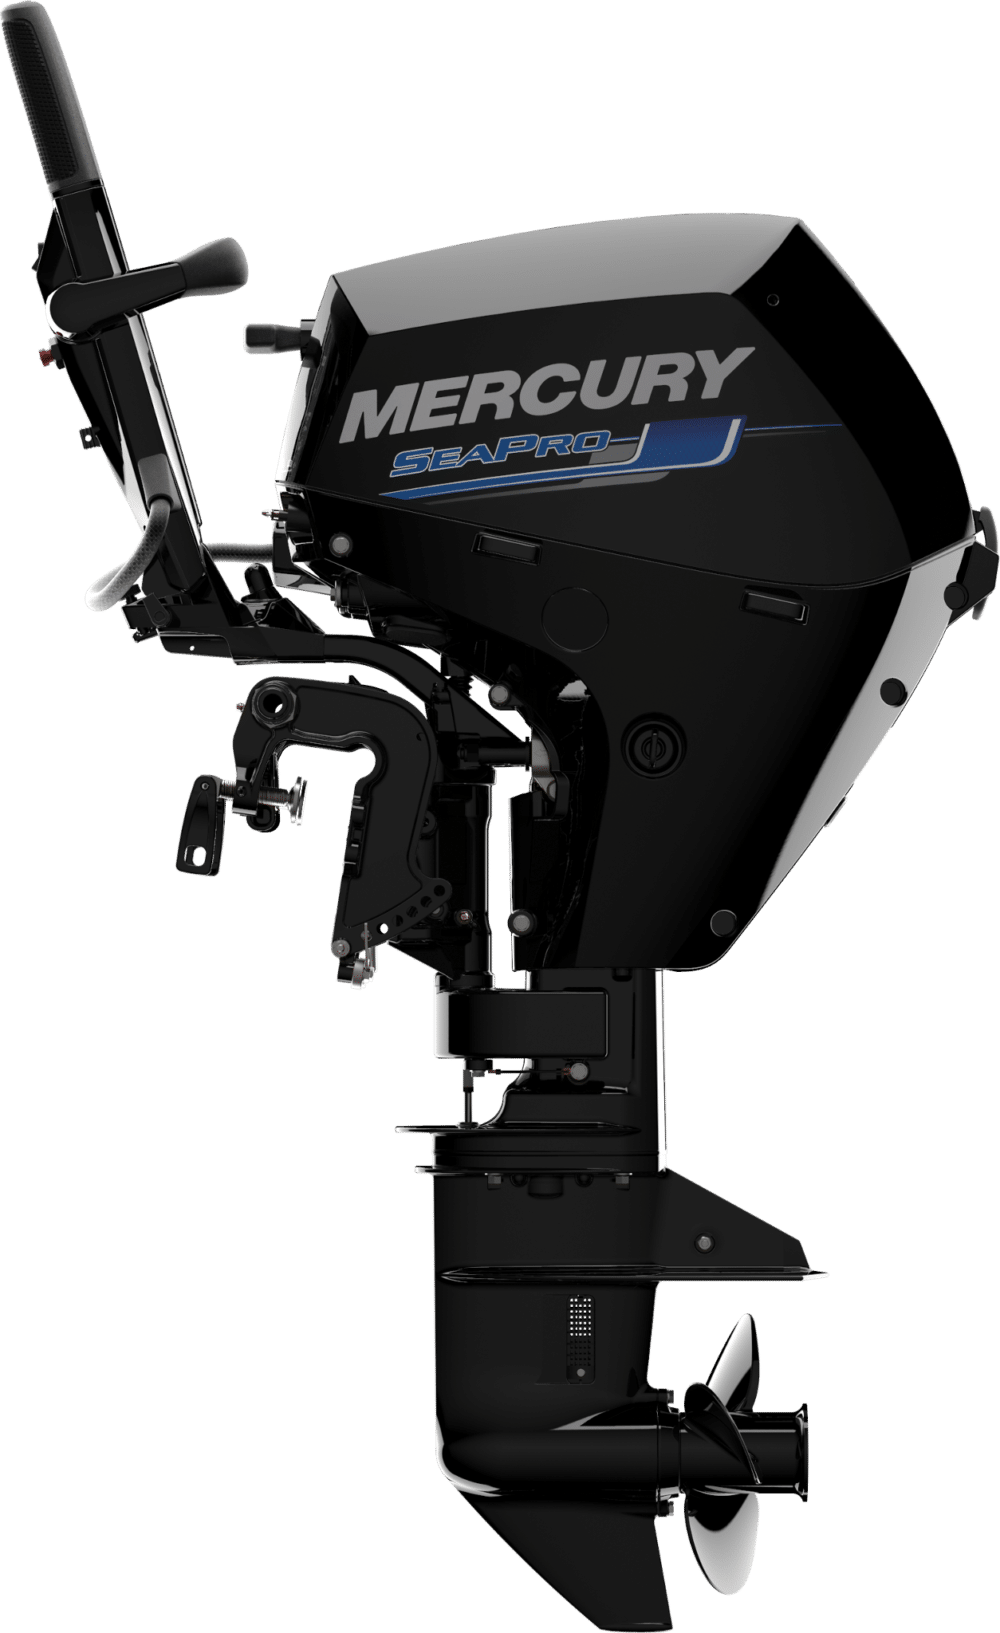 Mercury Seapro 15hp outboard